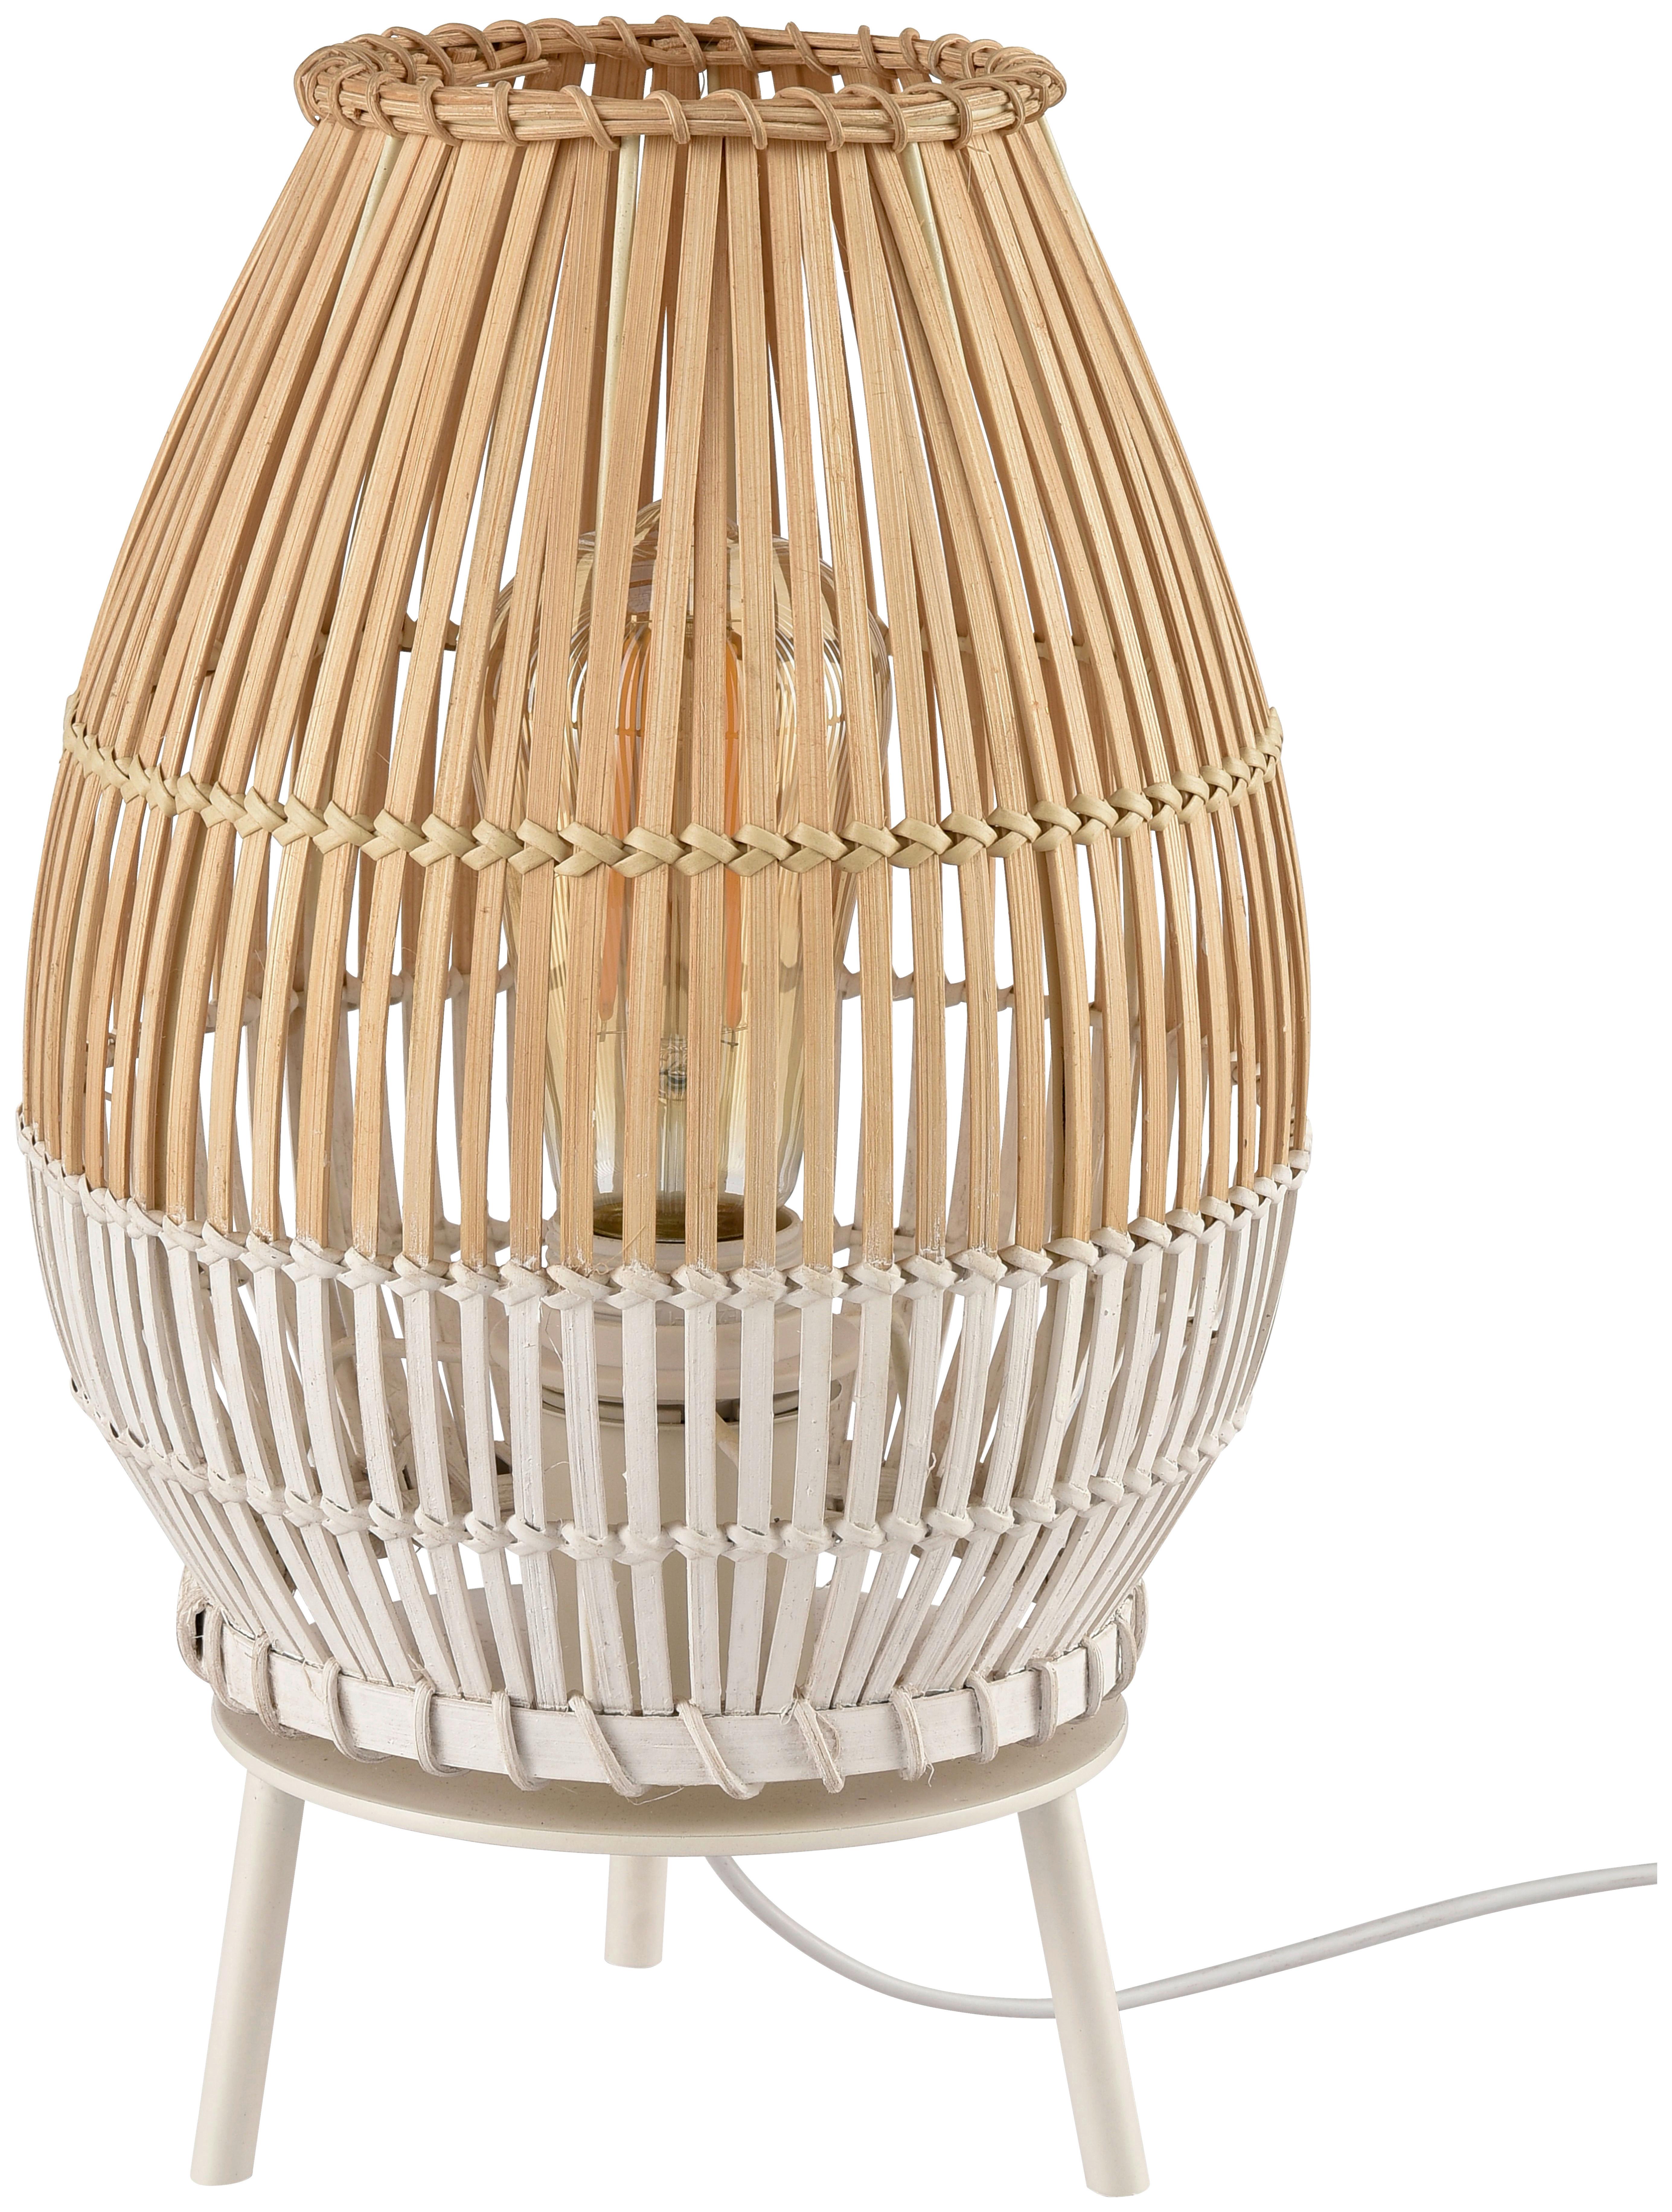 Tischleuchte Woldt aus Bambus max. 25 Watt - Naturfarben/Weiß, MODERN, Holz/Metall (20/30cm) - Modern Living